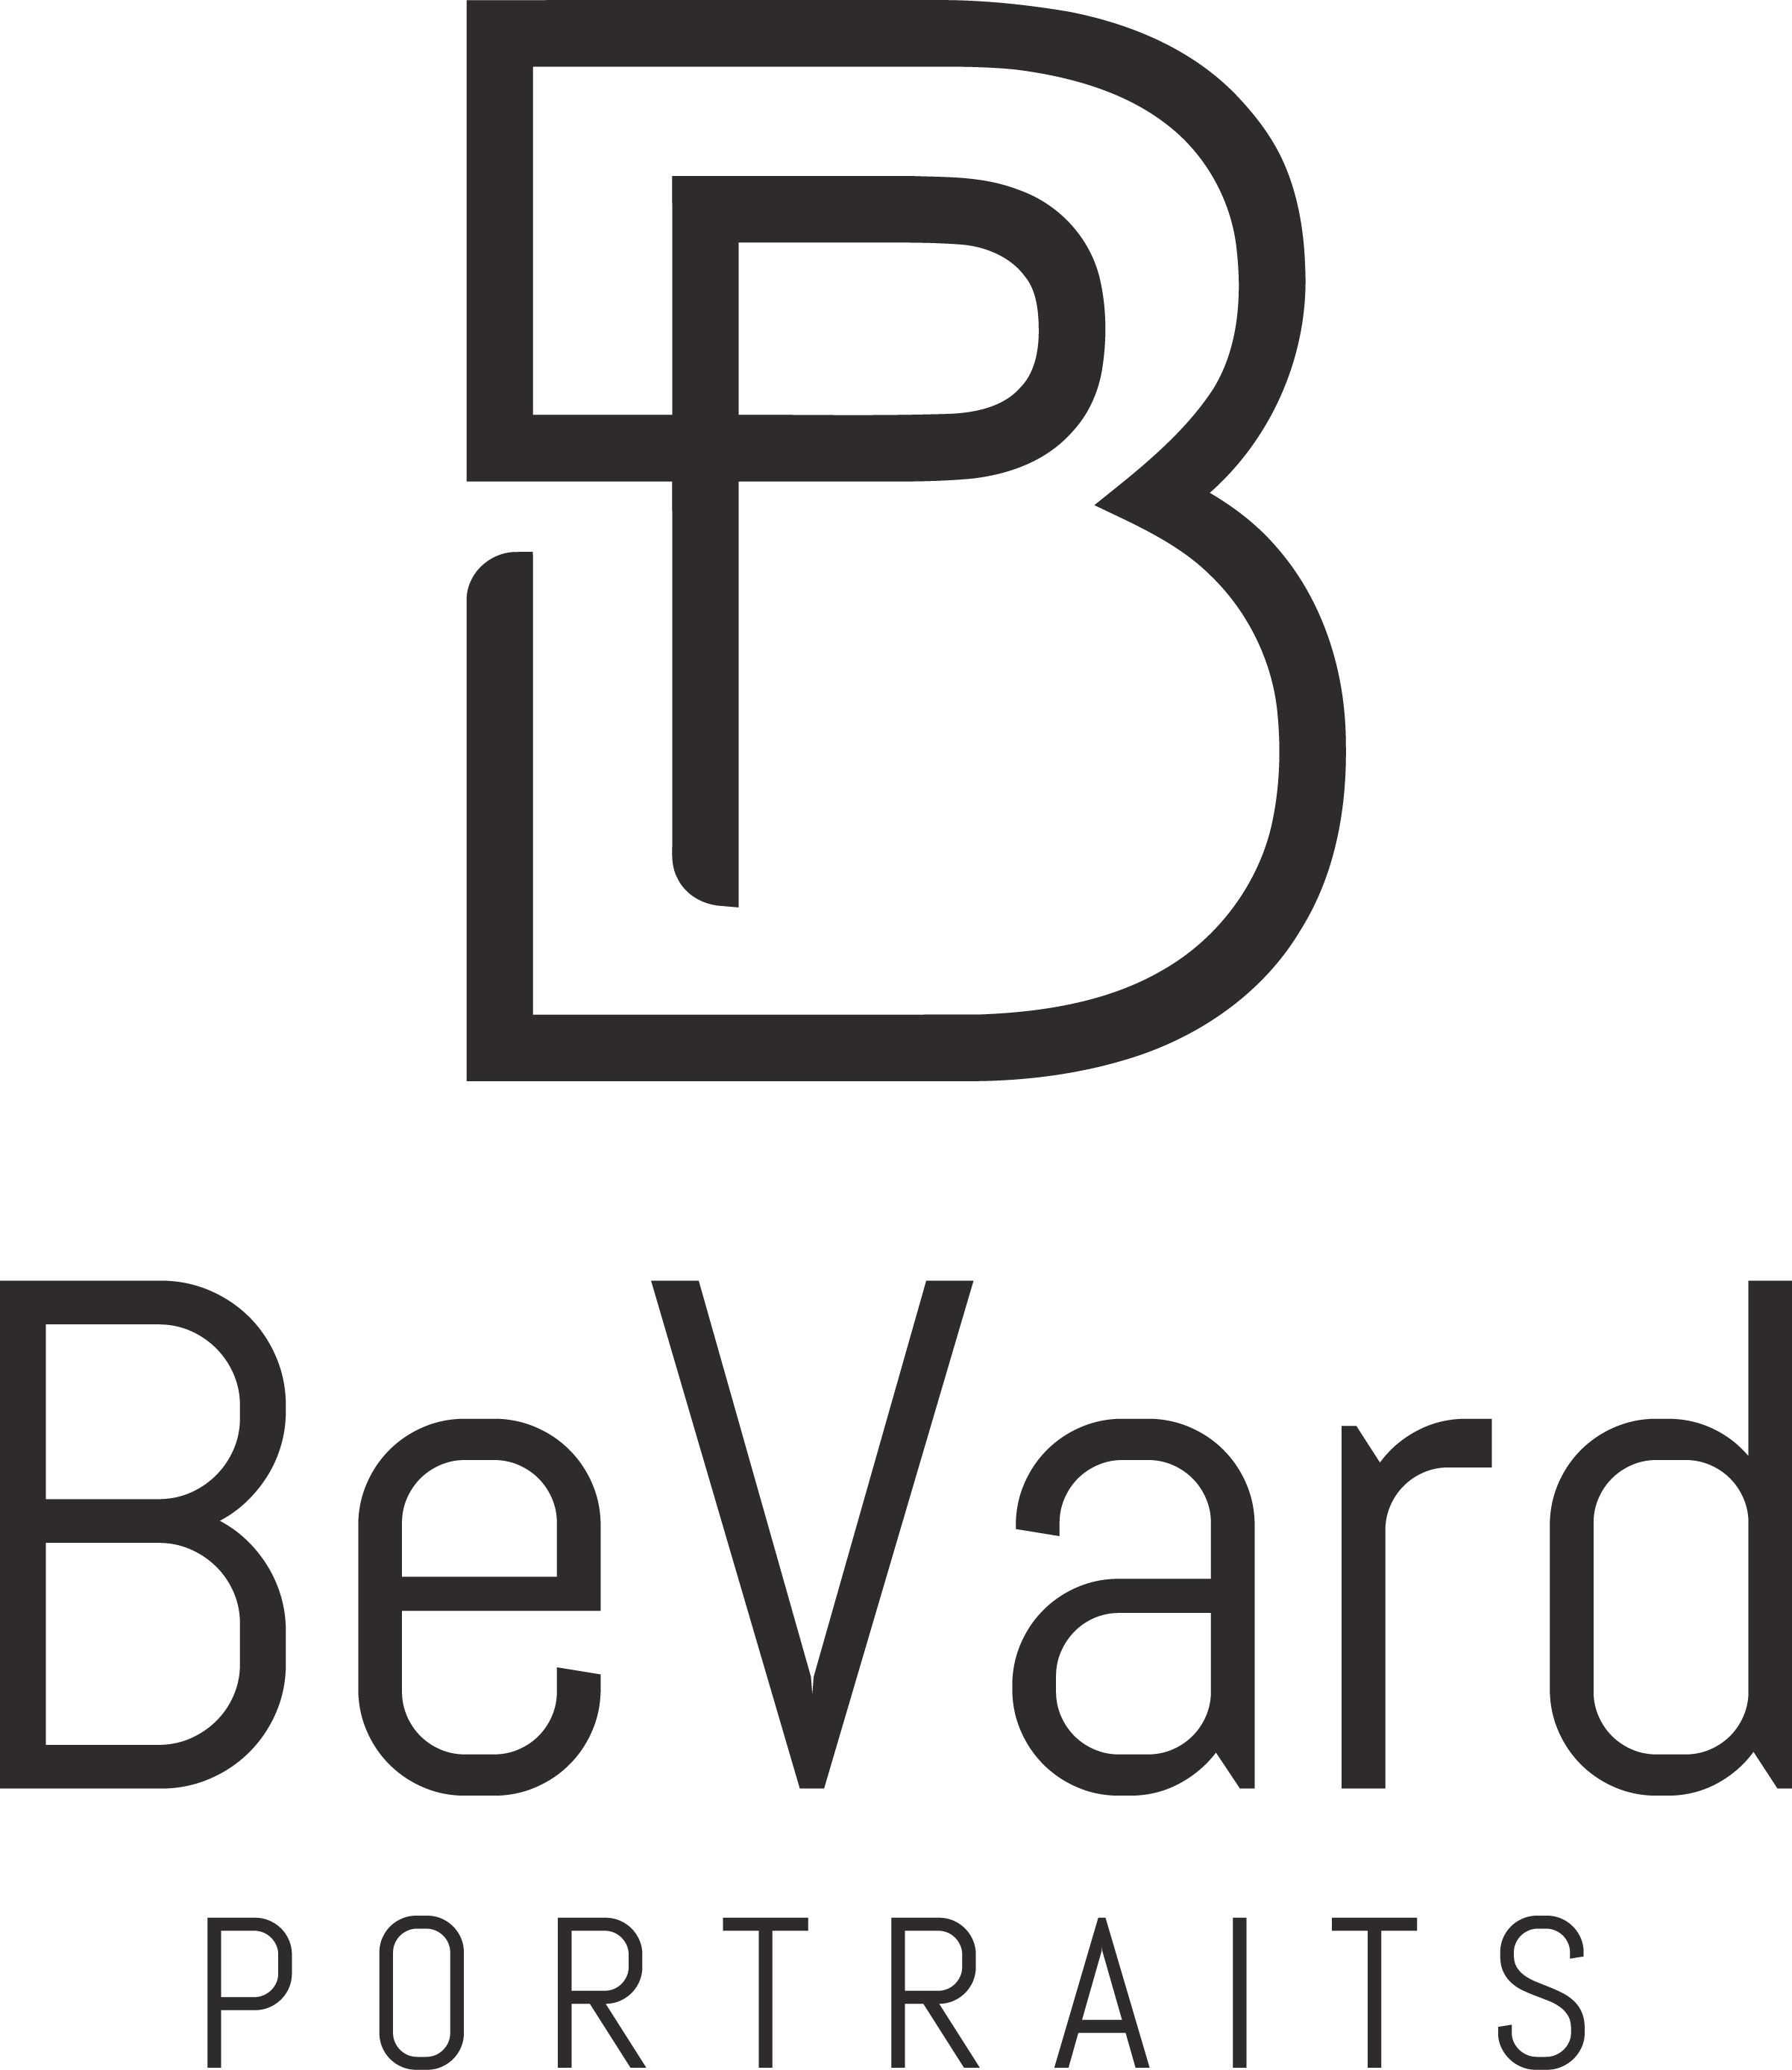 The BeVard Studio